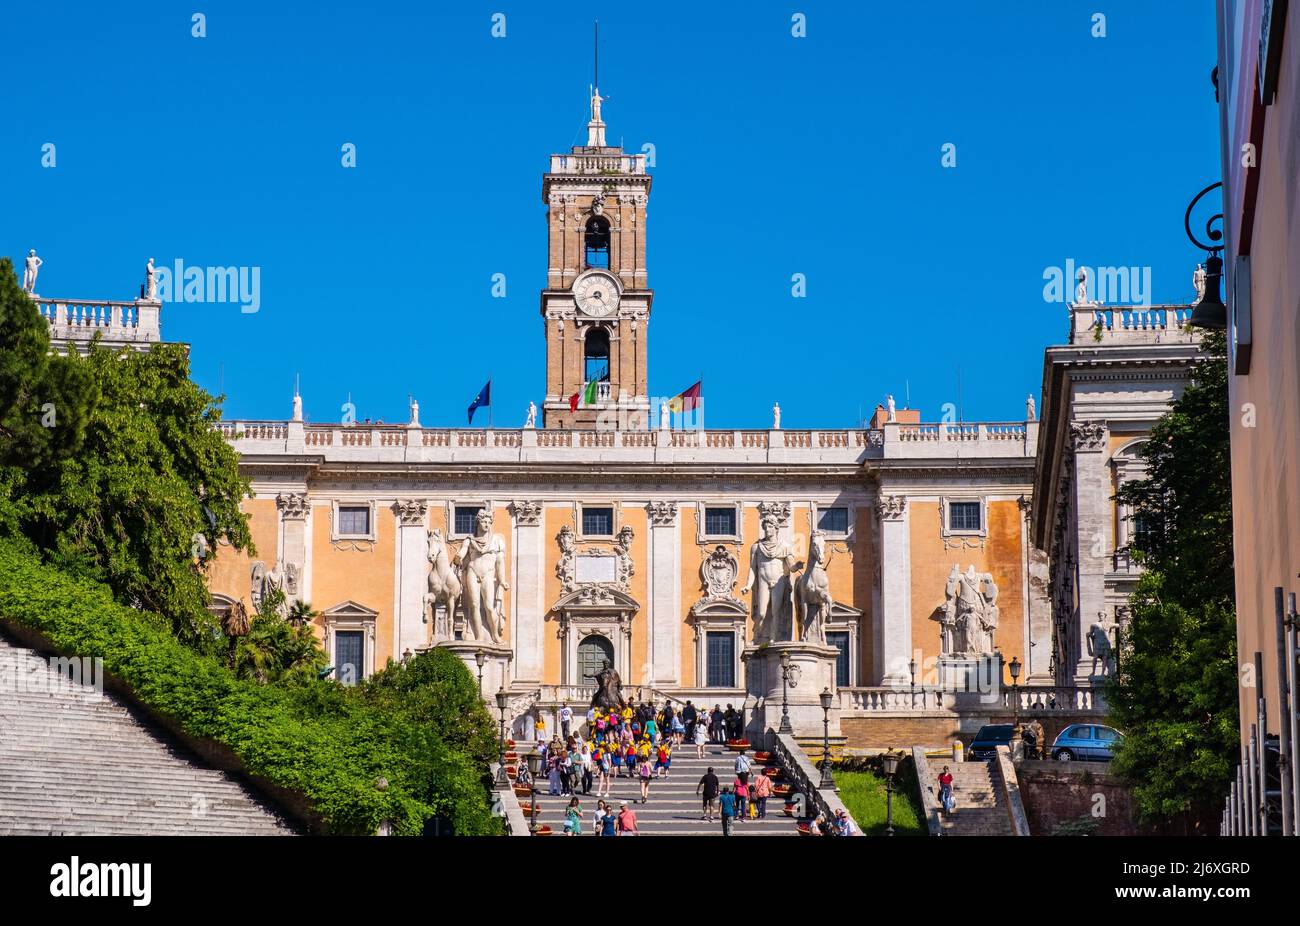 Rome, Italy - May 25, 2018: Palazzo Senatorio Senate Palace by Michelangelo Buonarotti at Piazza Campidoglio square at Capitoline hill in historic cit Stock Photo